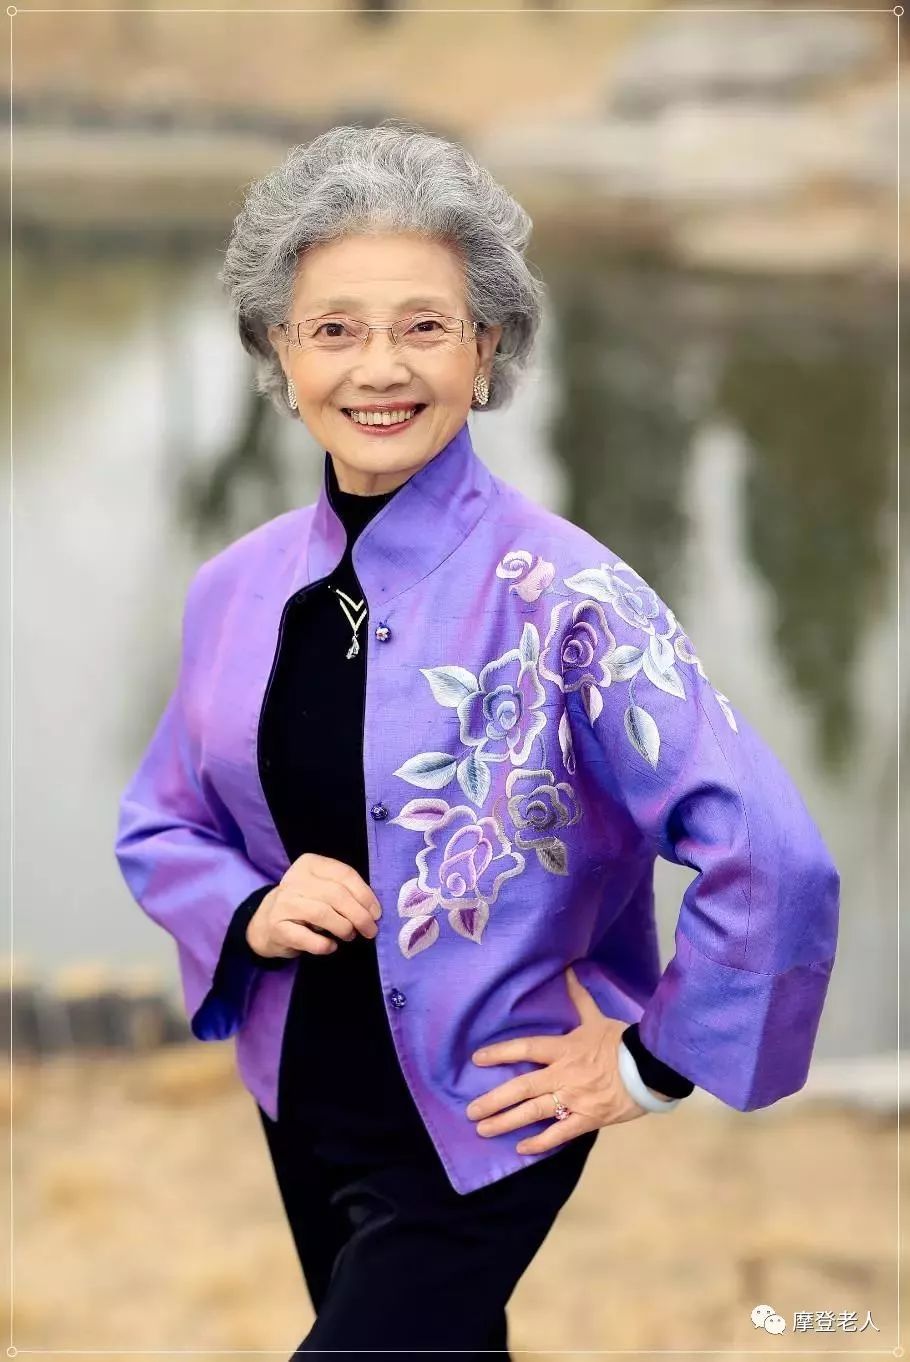 88岁的她成为中国最时尚的奶奶,美得令人心醉